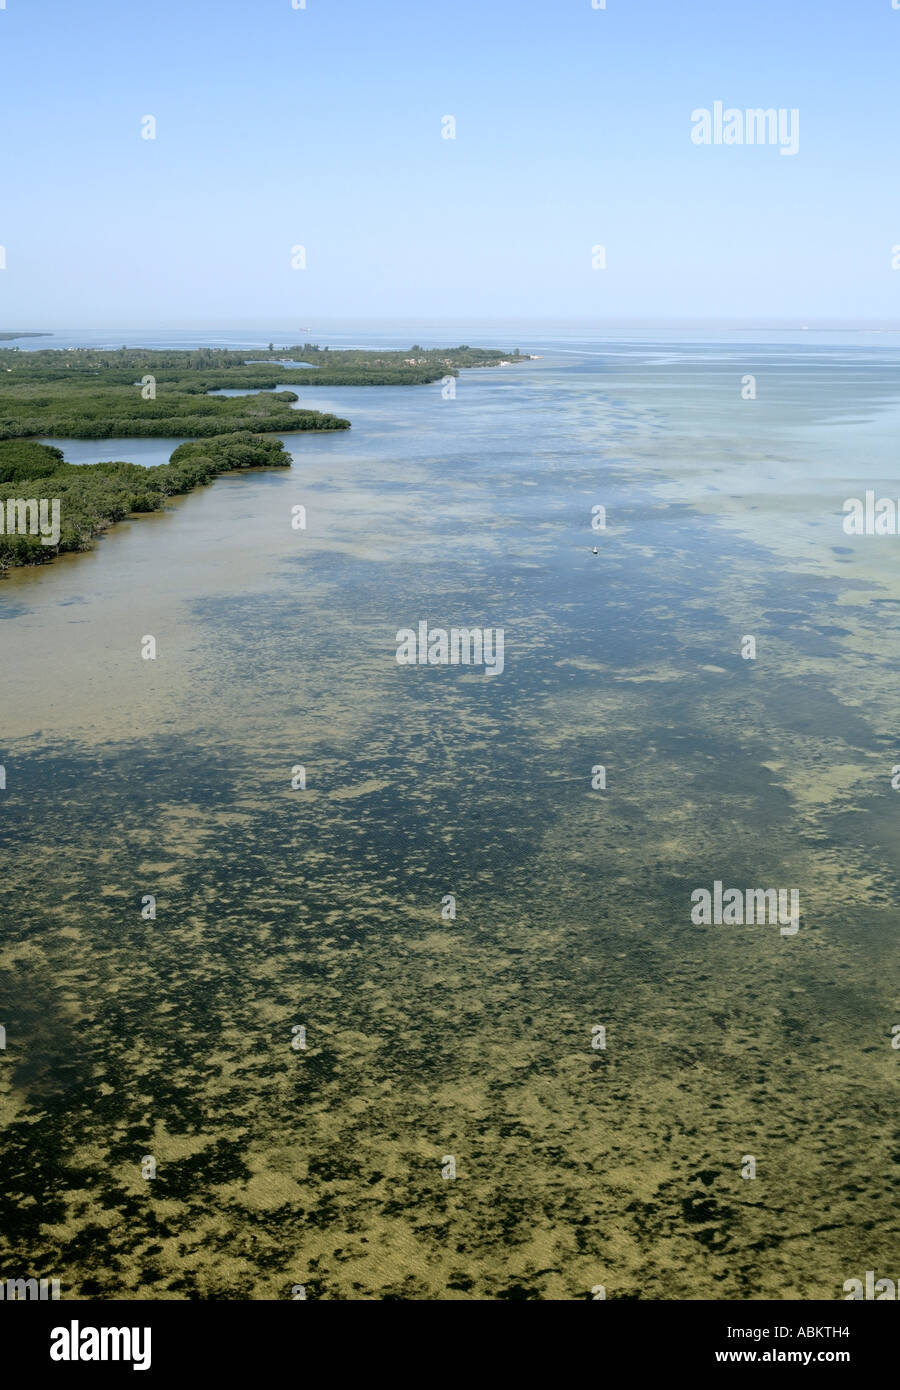 Aerial scenic photo of Tampa Bay, Mariposa Key, Harbor Key, Manatee County, Florida Stock Photo